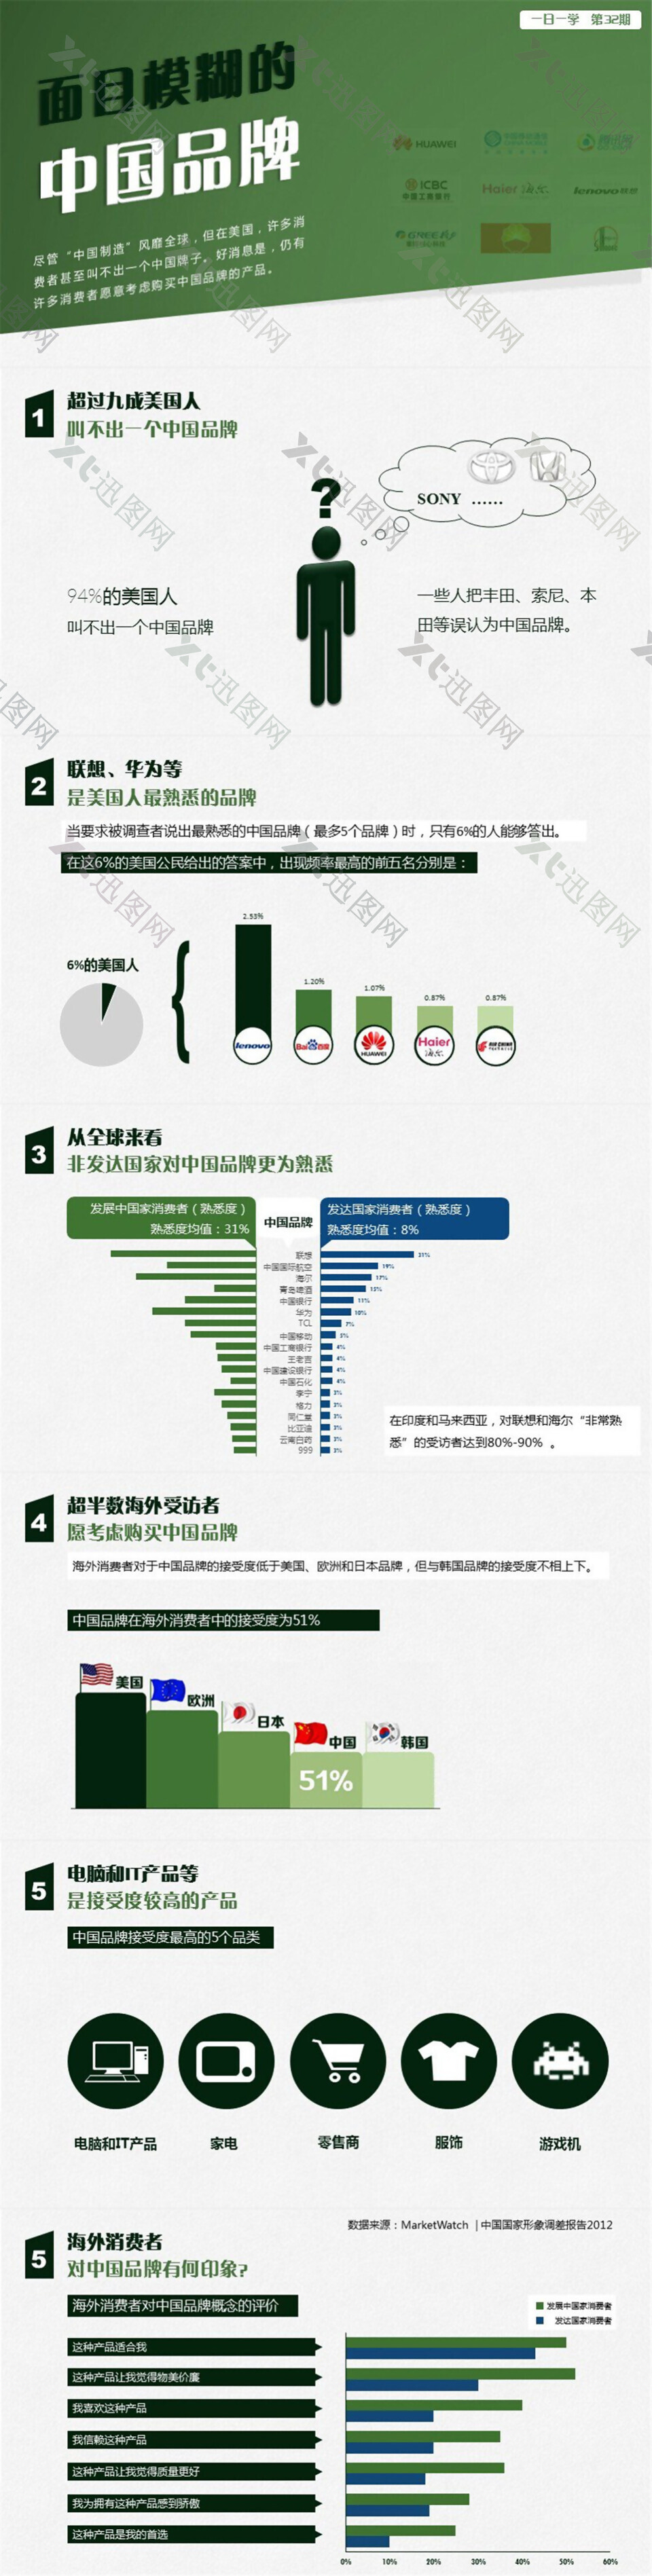 中国品牌在全球的熟知度调查分析报告ppt模板